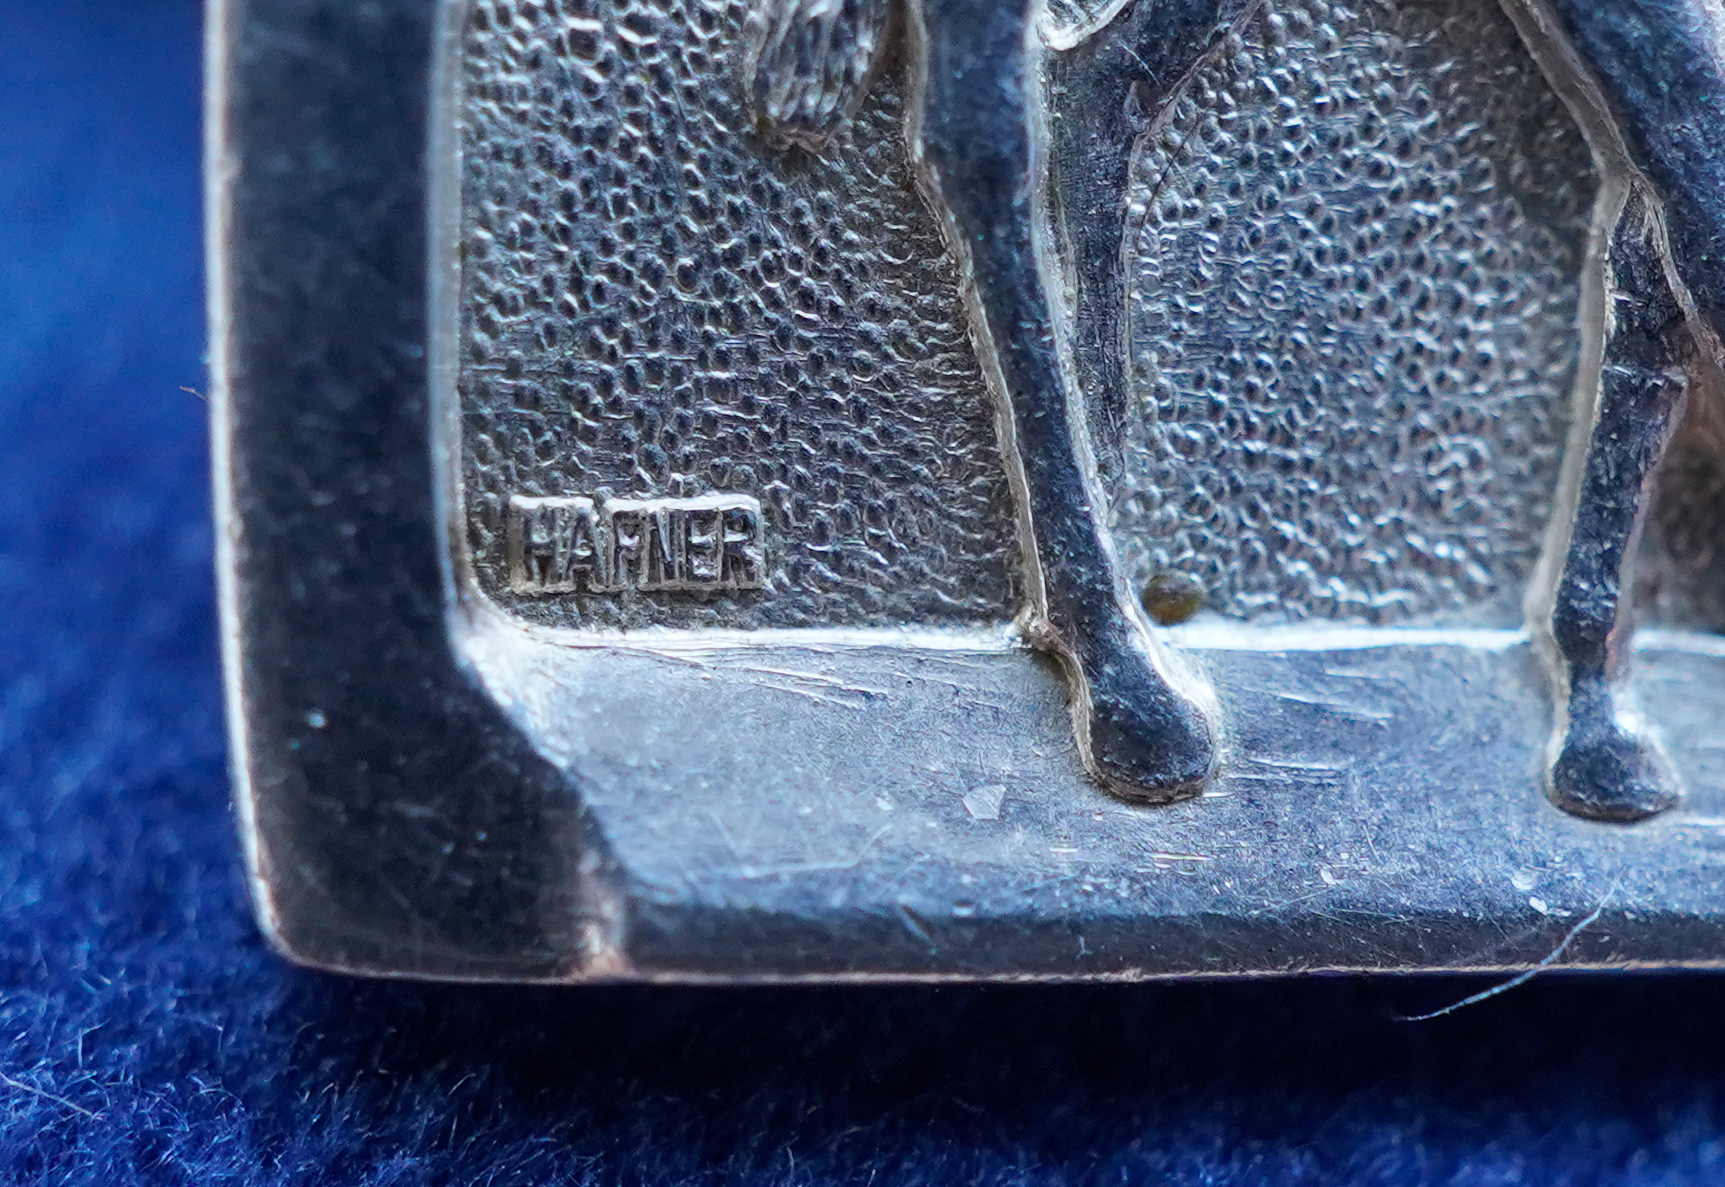 Emil Hafner mark on Sterling Silver Phar Lap Medallion